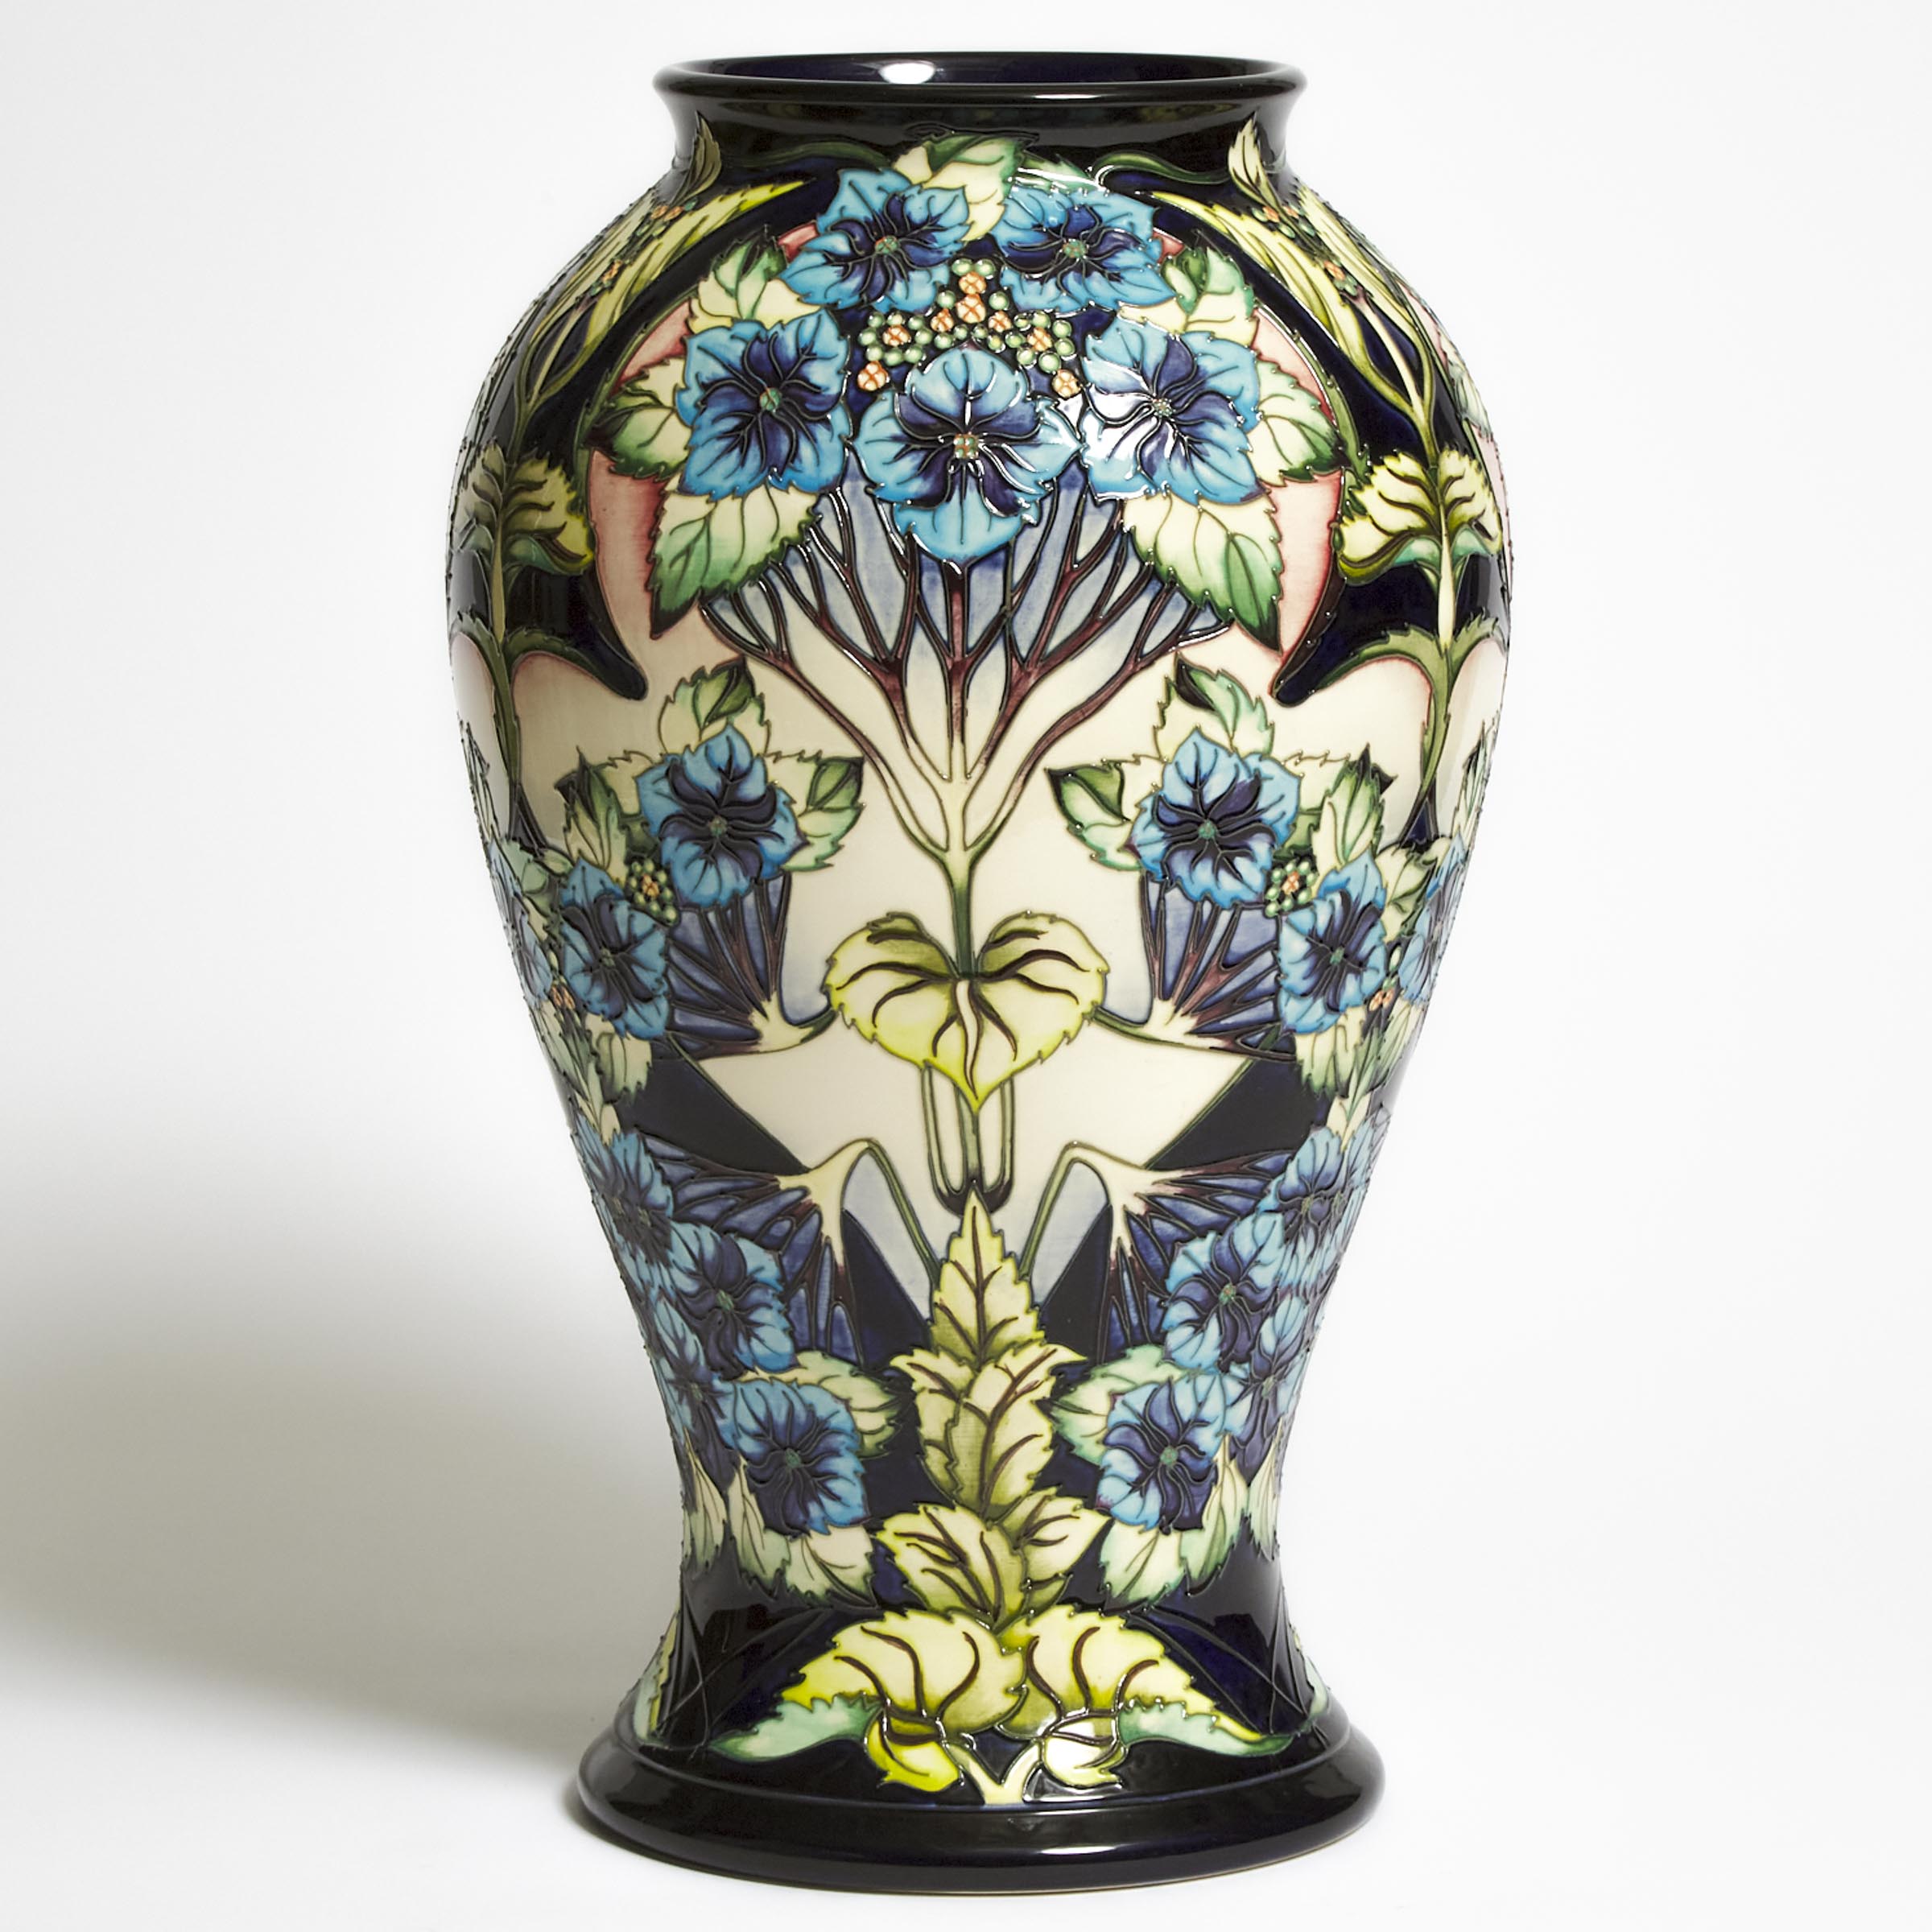 Moorcroft Profusion Large Vase, Philip Gibson, 8/100, 2001